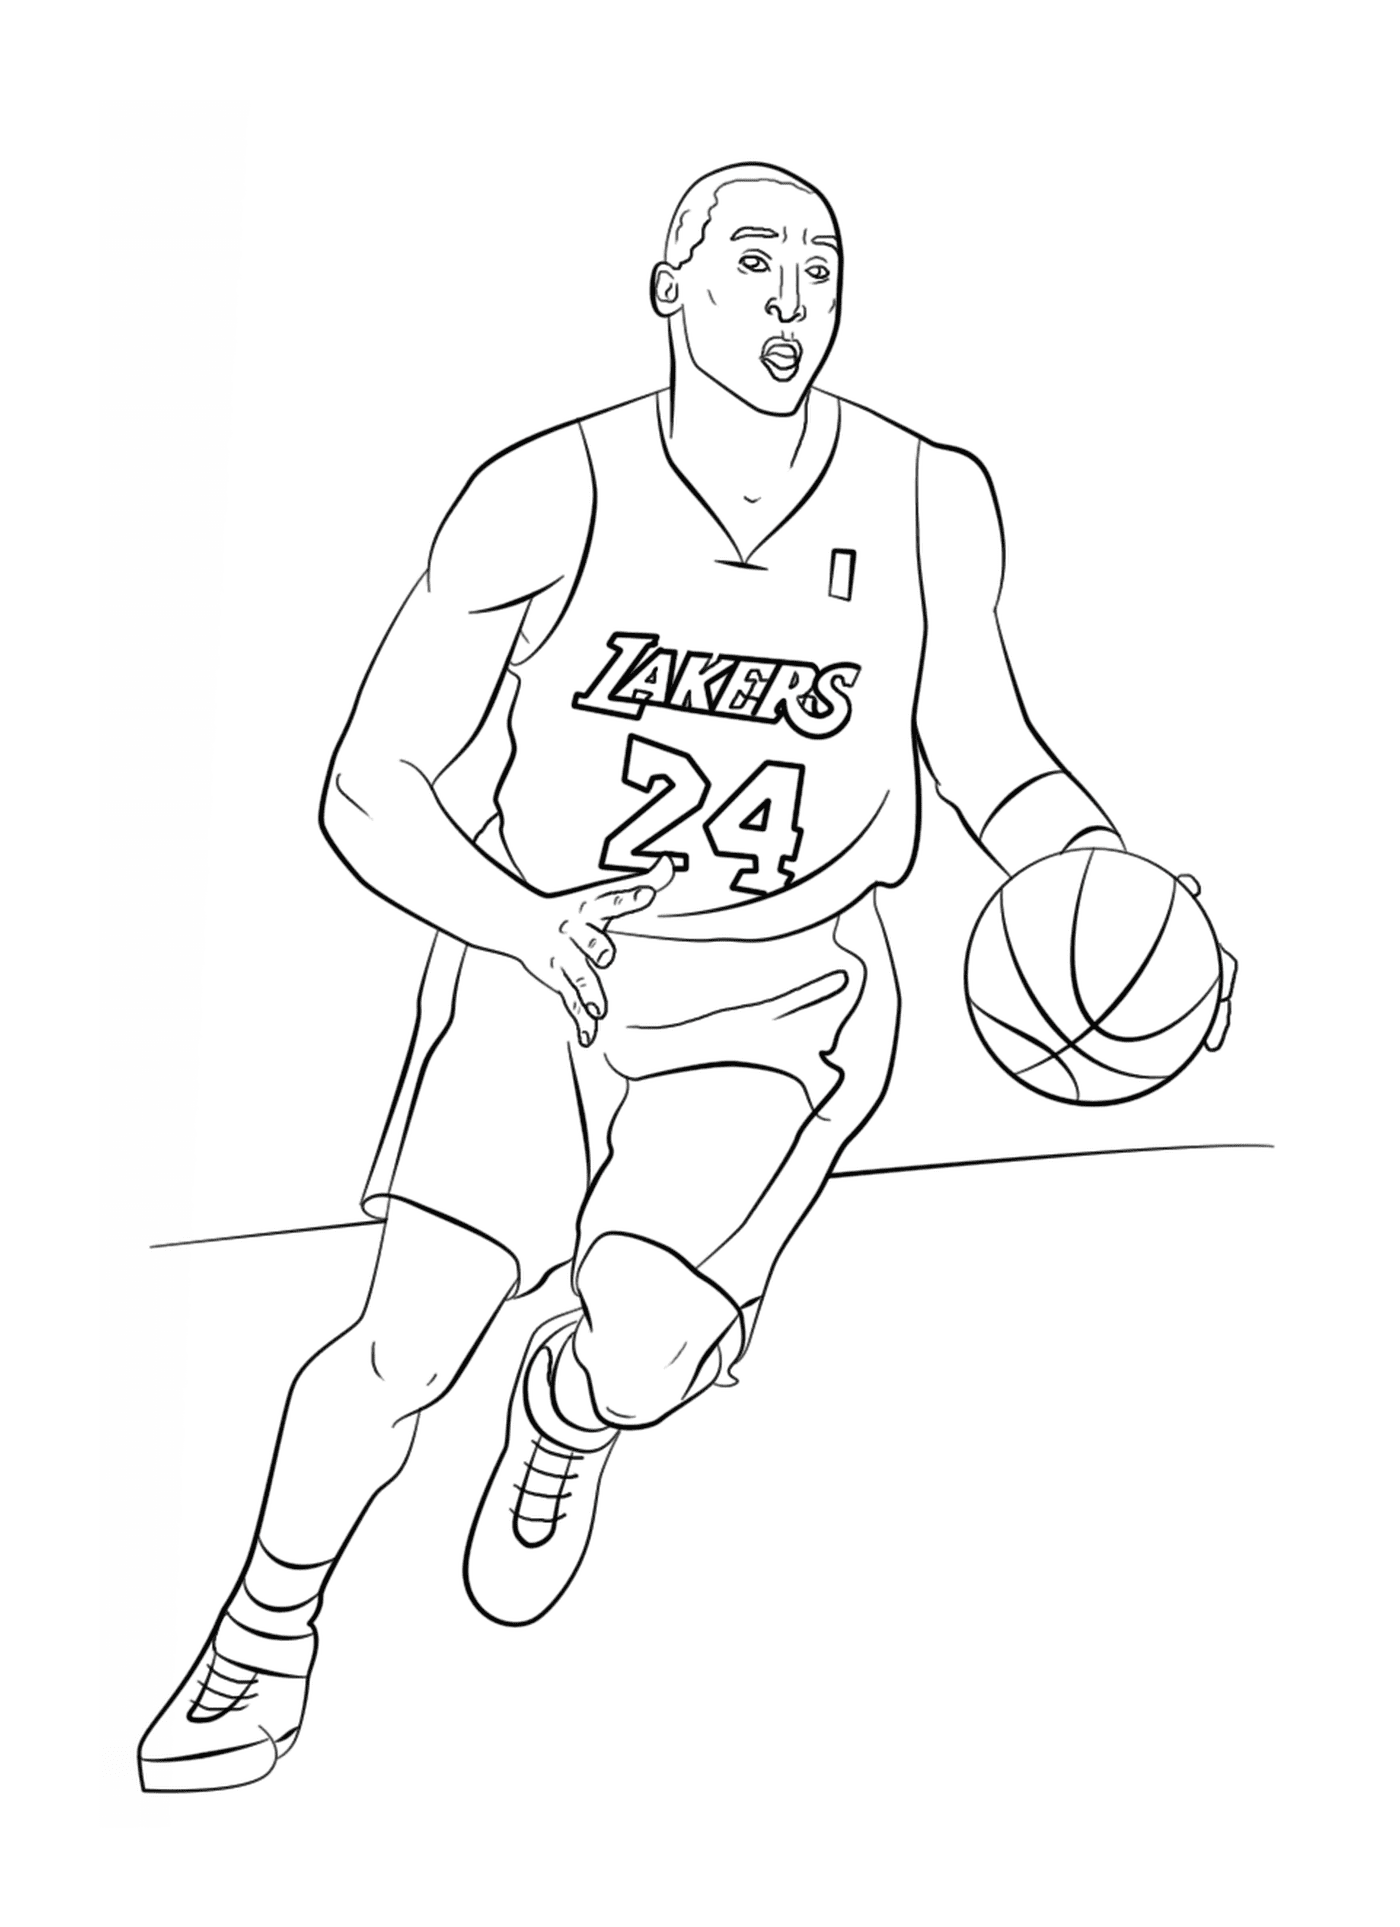  Коби Брайант держит баскетбольный мяч 